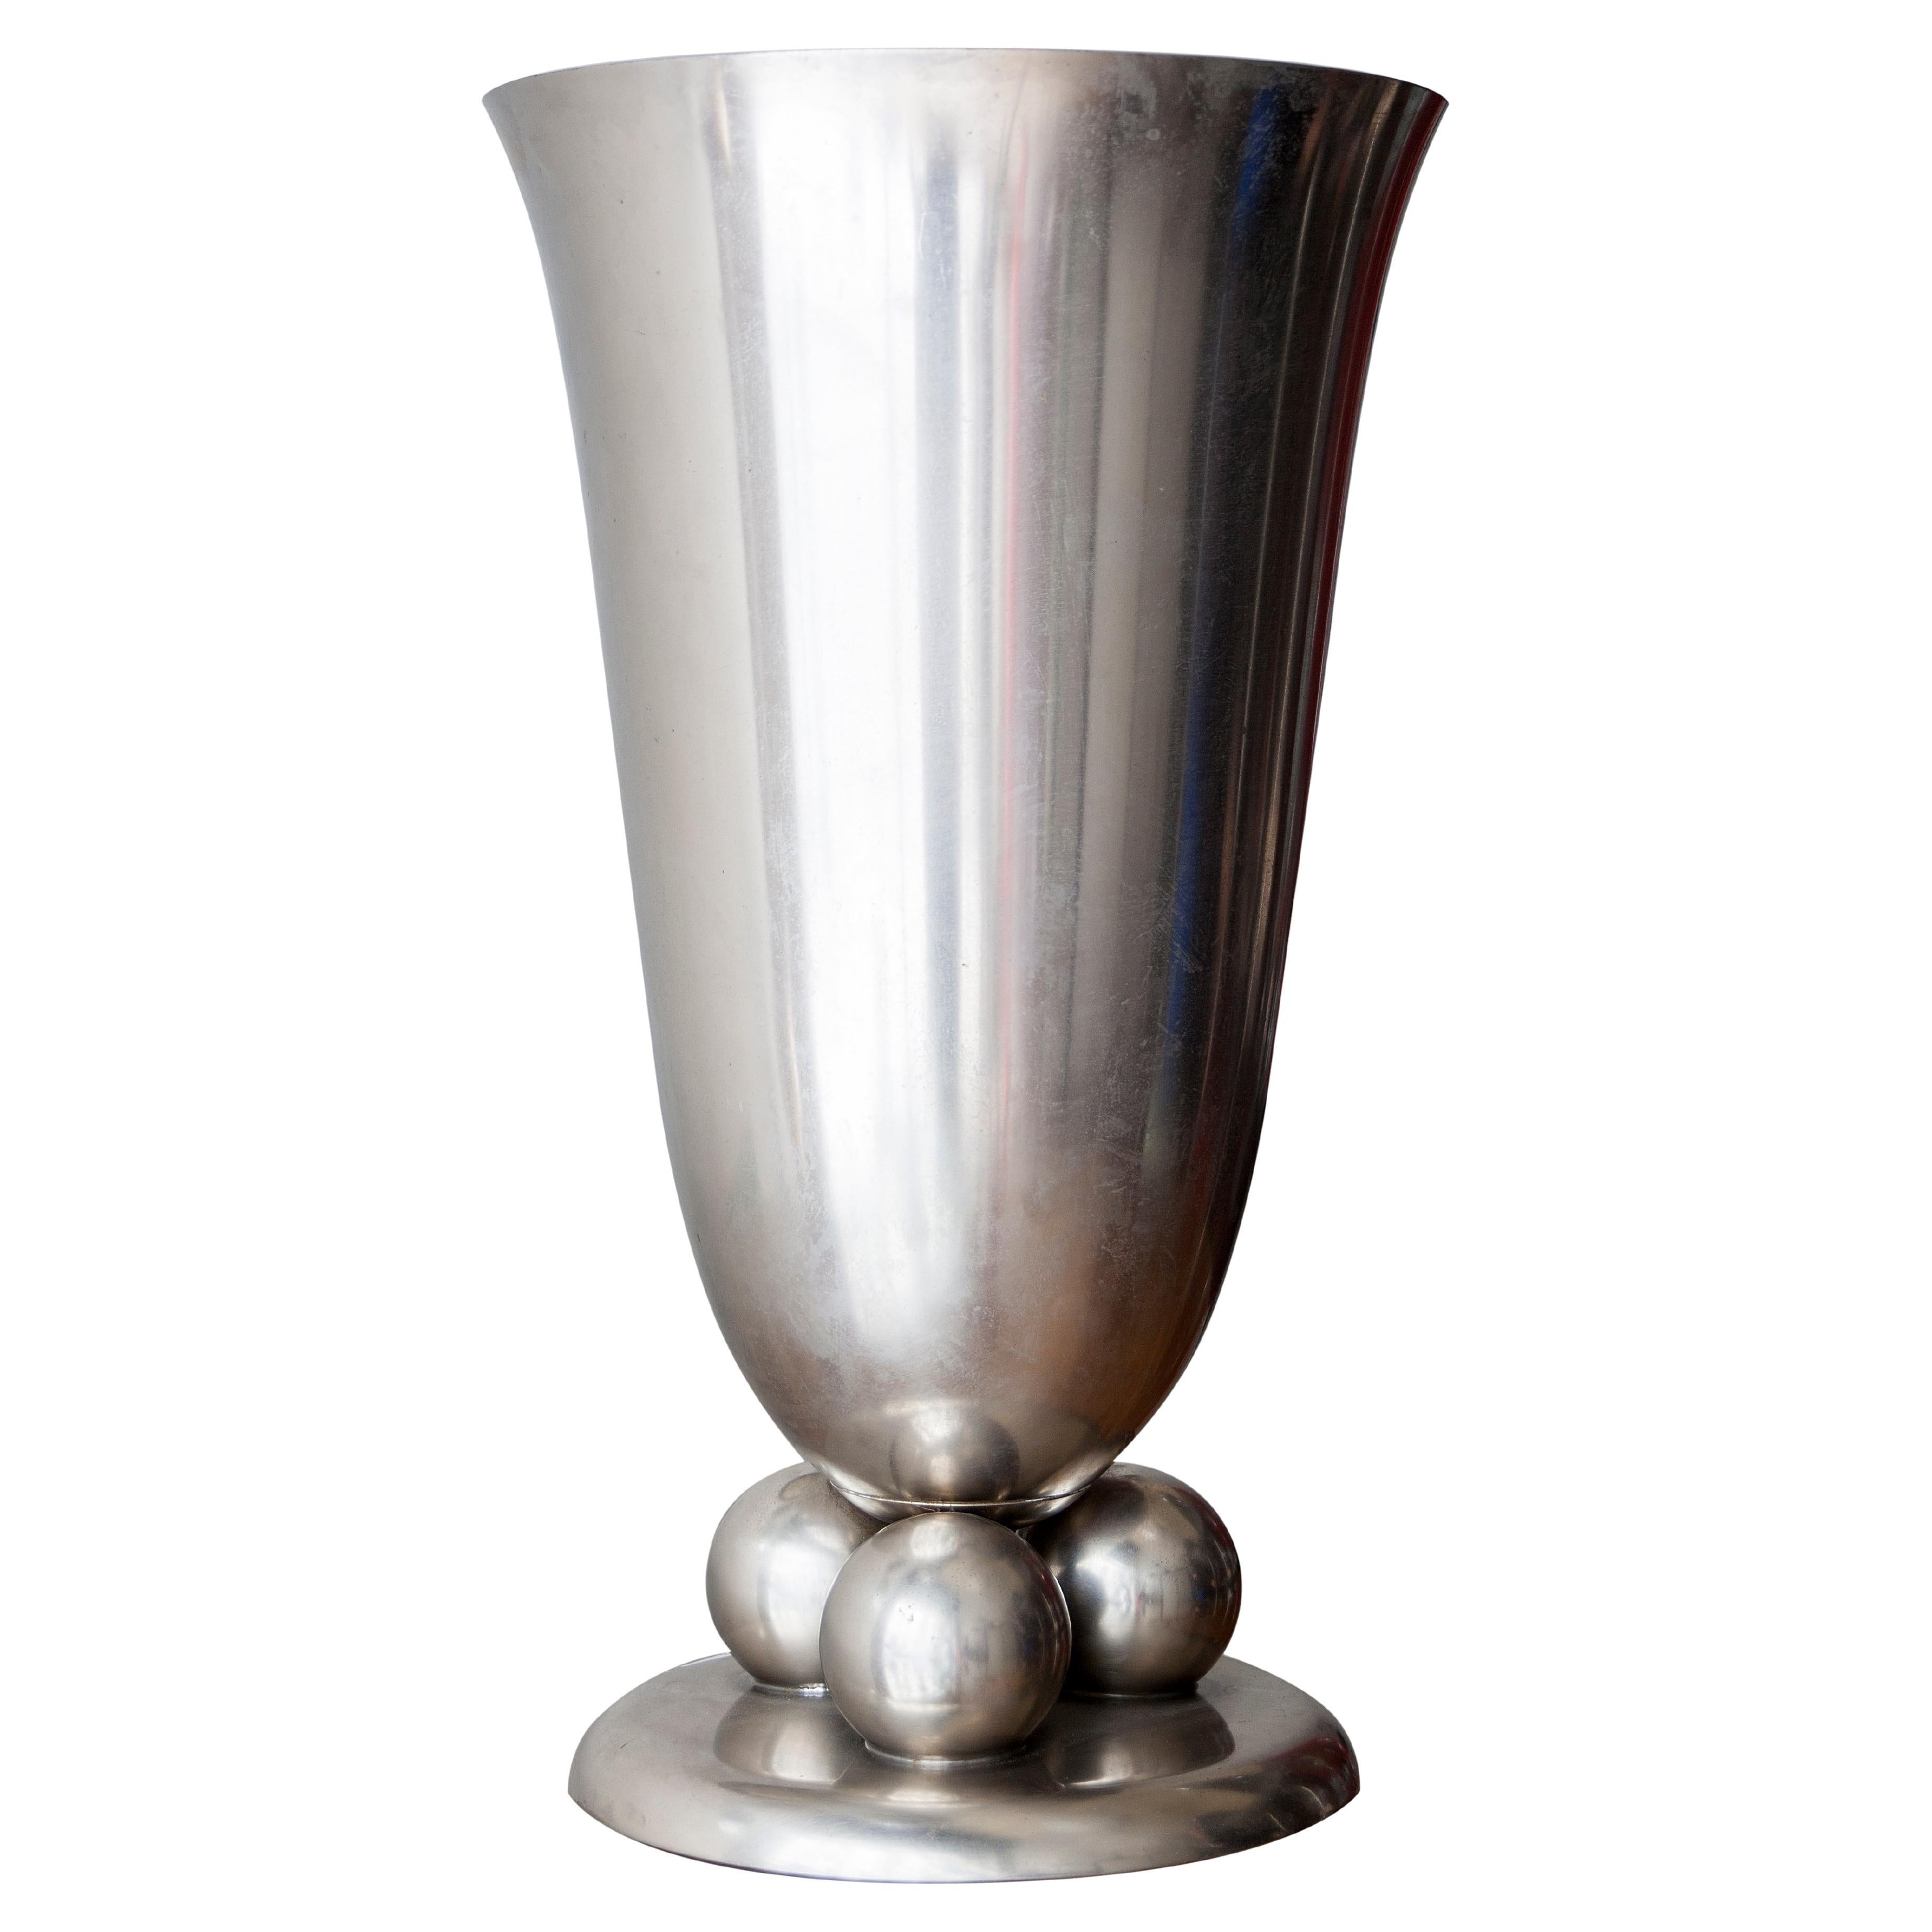 Art-Déco-Tischlampe, Design: Wmf, 1920, aus Silberbronze und Glas